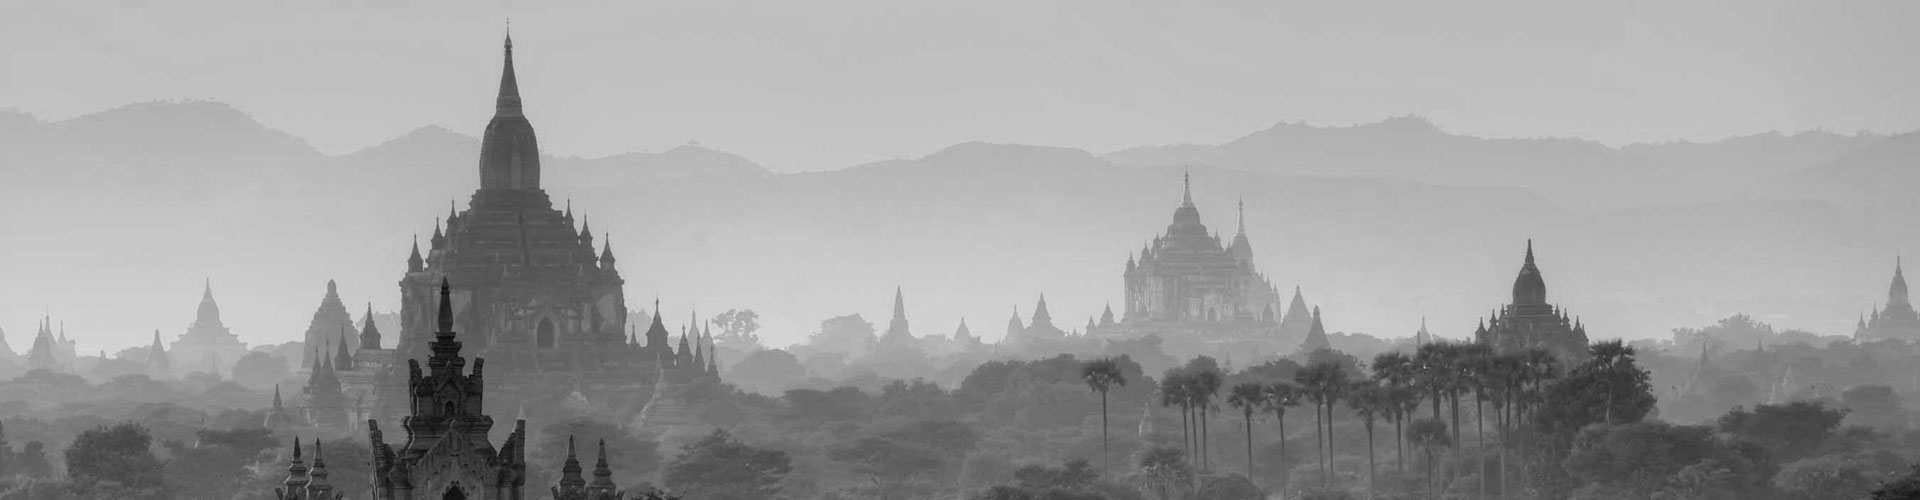 Myanmar (Burma) Travel Advice